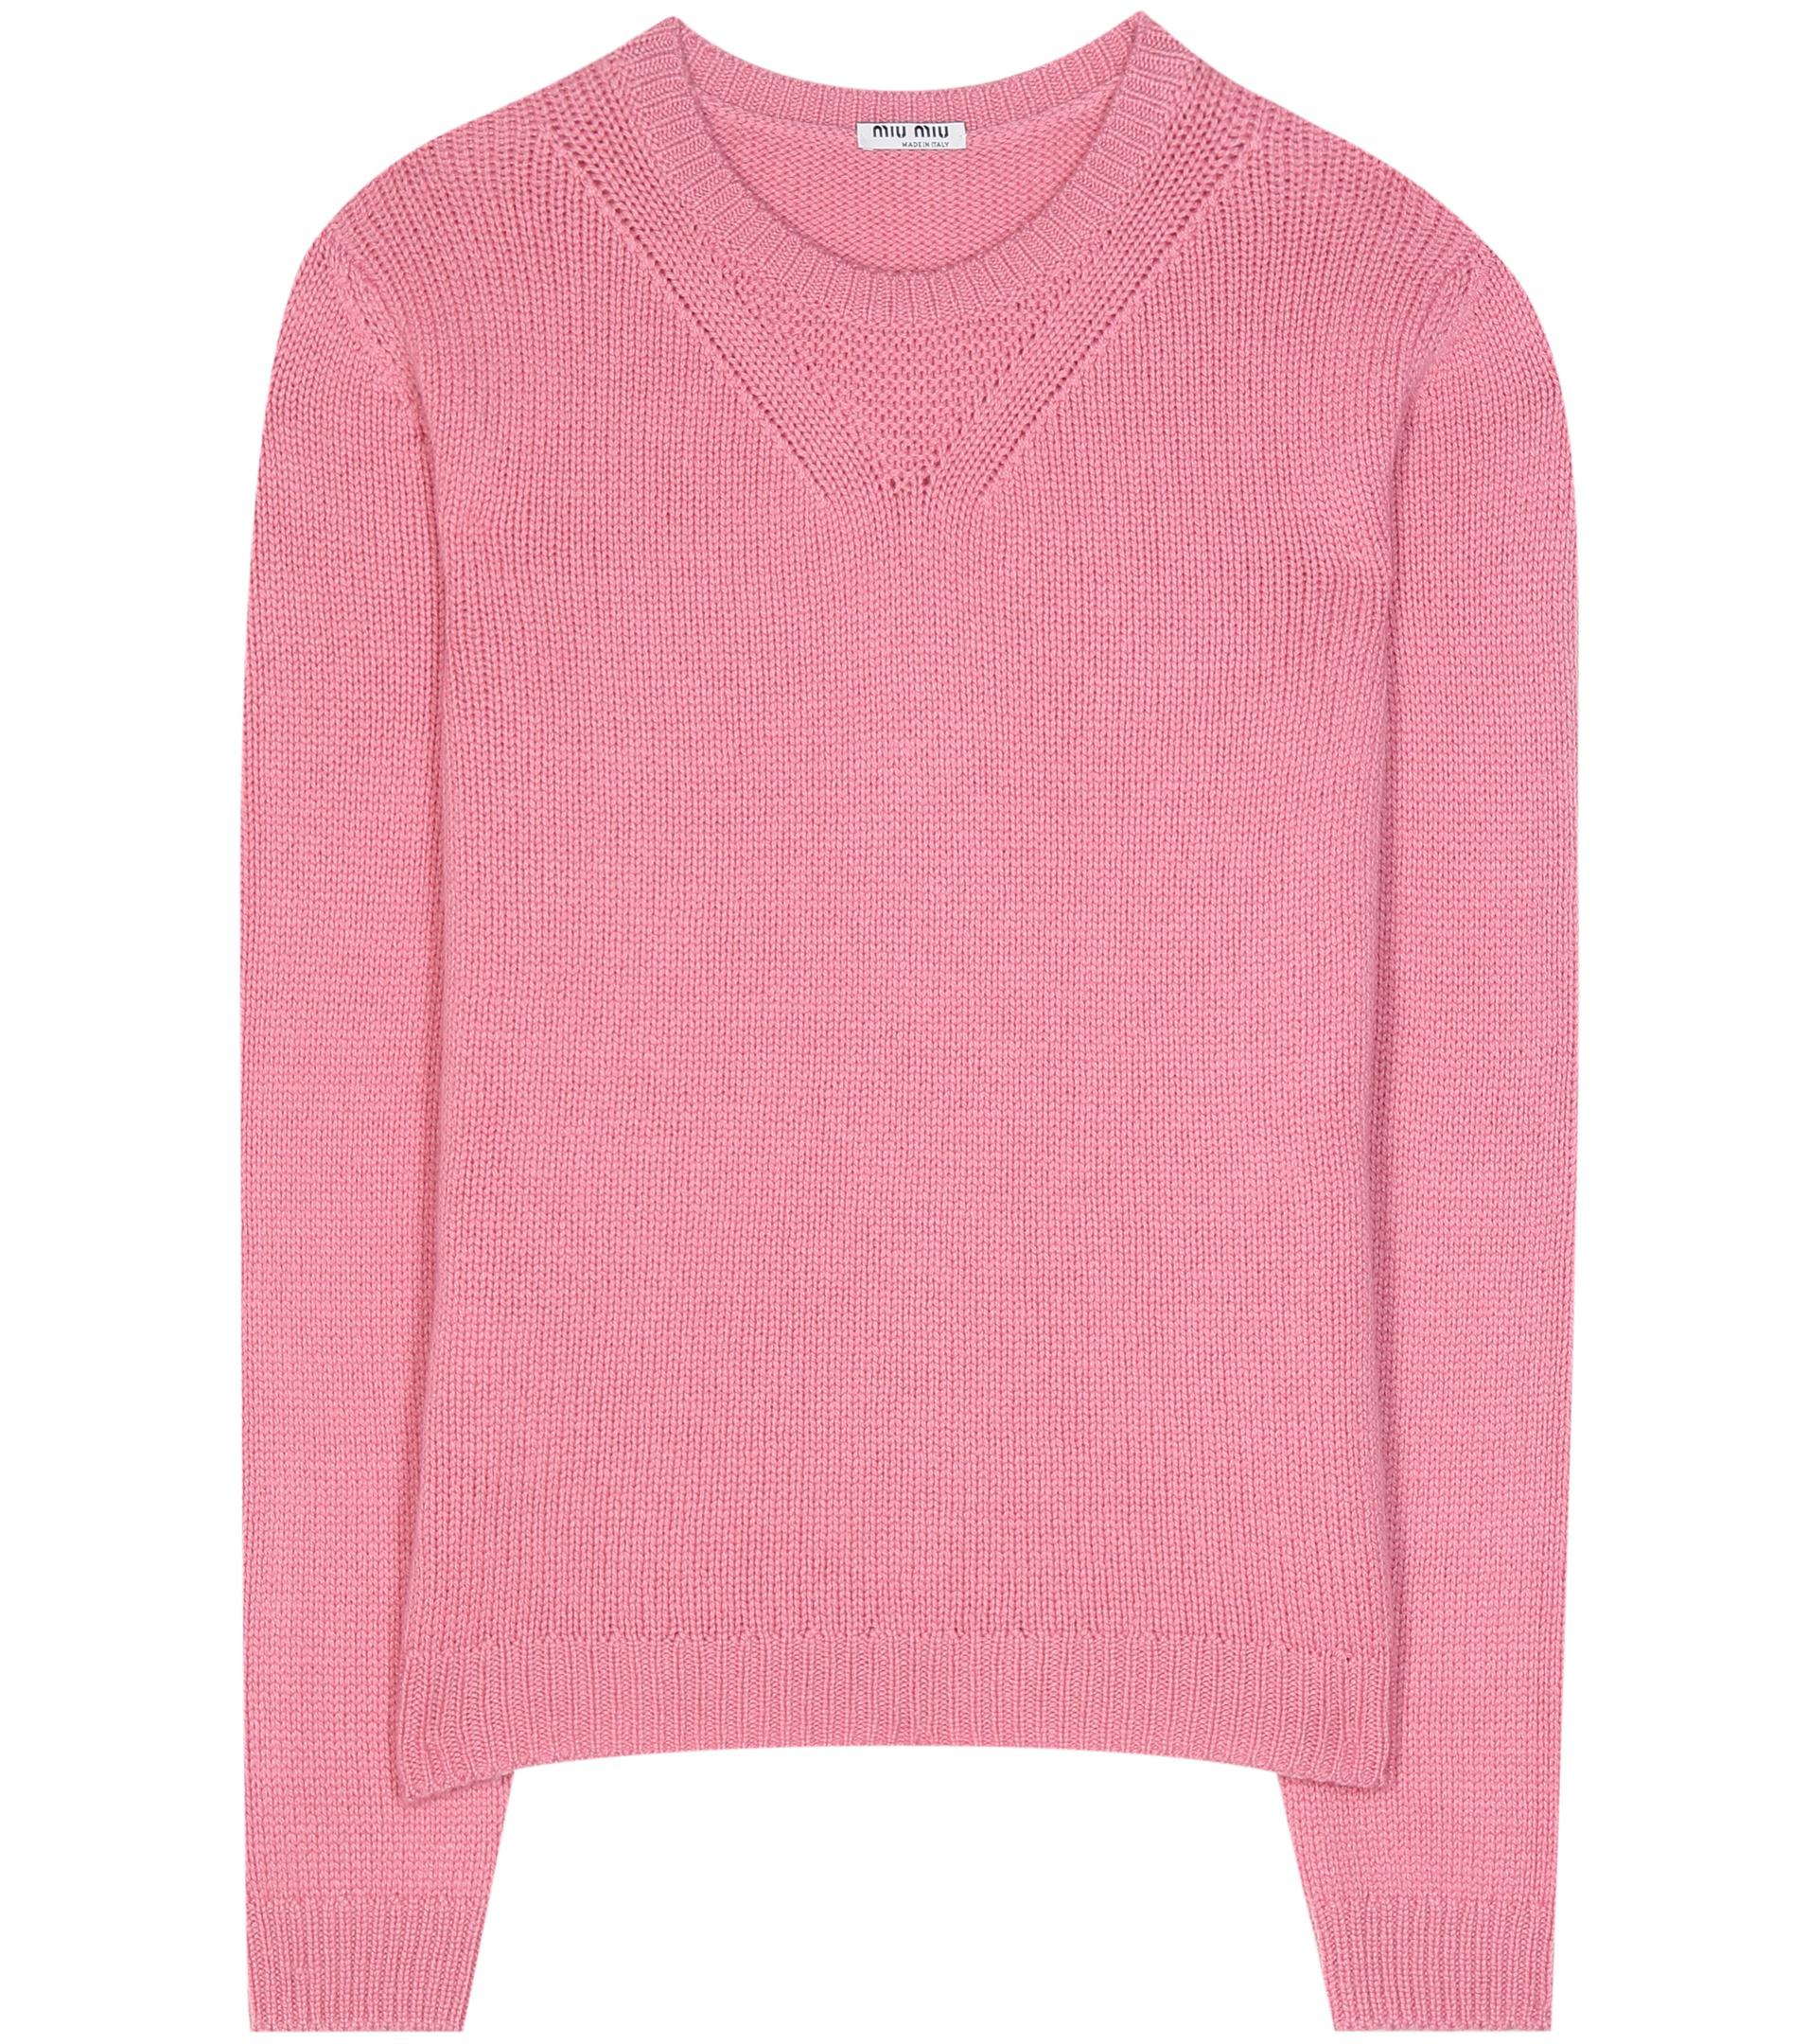 Miu Miu Cashmere Sweater in Pink - Lyst